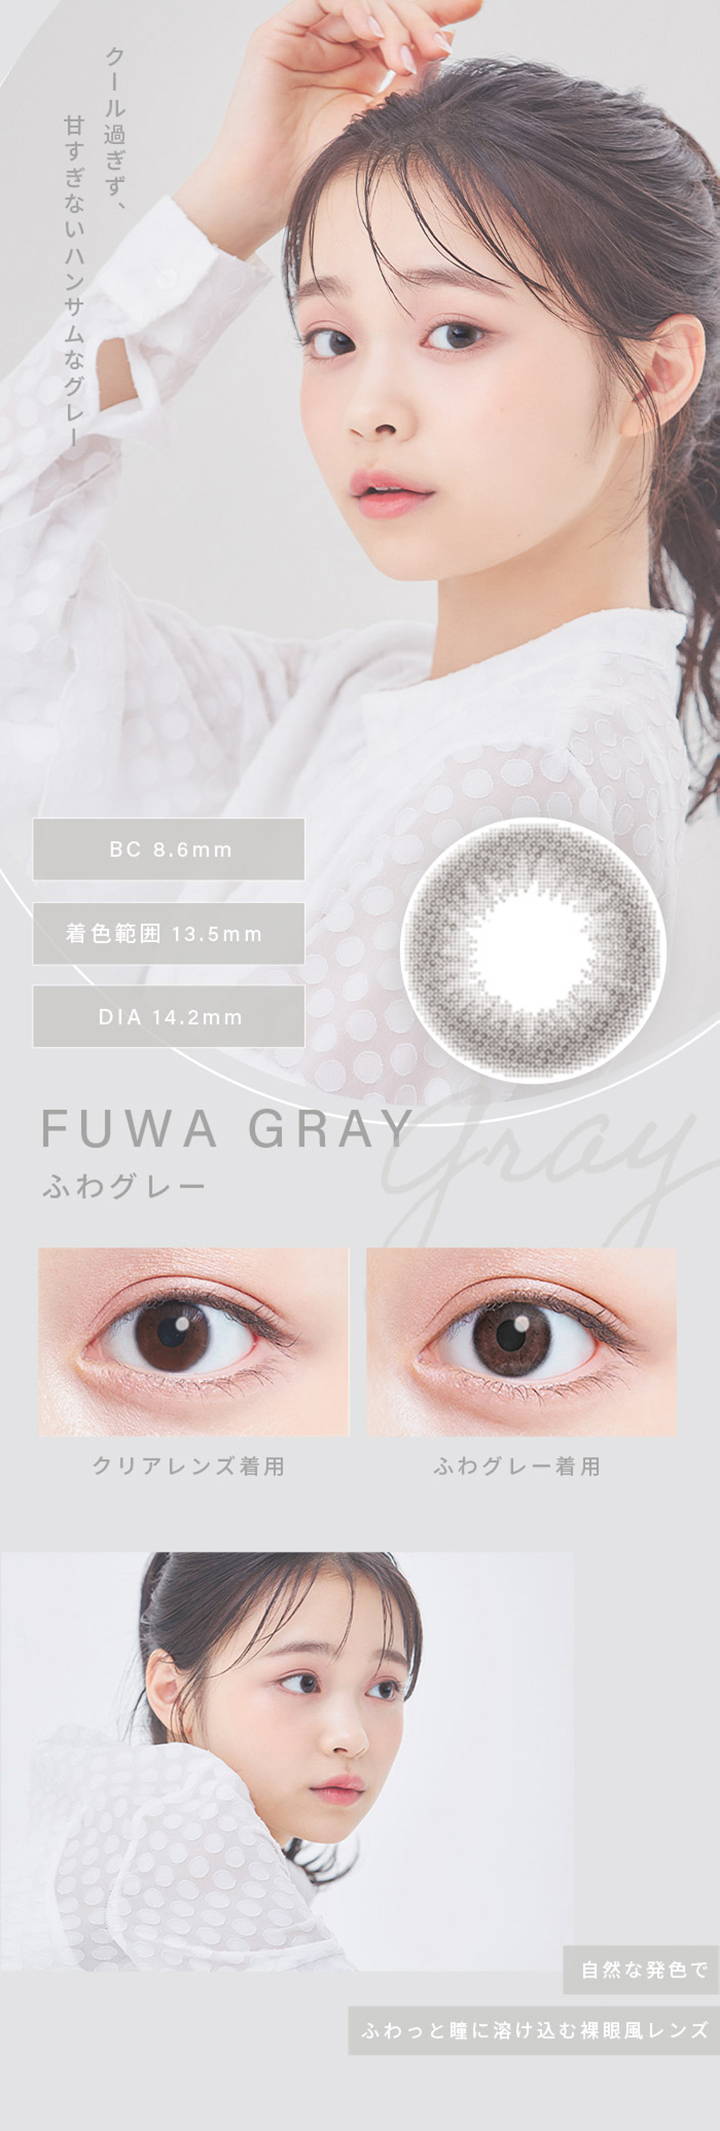 ふわグレー(FUWA GRAY),クール過ぎず、甘すぎないハンサムなグレー,BC8.6mm,着色直径13.5mm,DIA14.2mm,クリアレンズとふわグレーの装用比較写真,自然な発色でふわっと瞳に溶け込む裸眼風レンズ|ふわナチュラル(FUWA NATURAL) ワンデーコンタクトレンズ